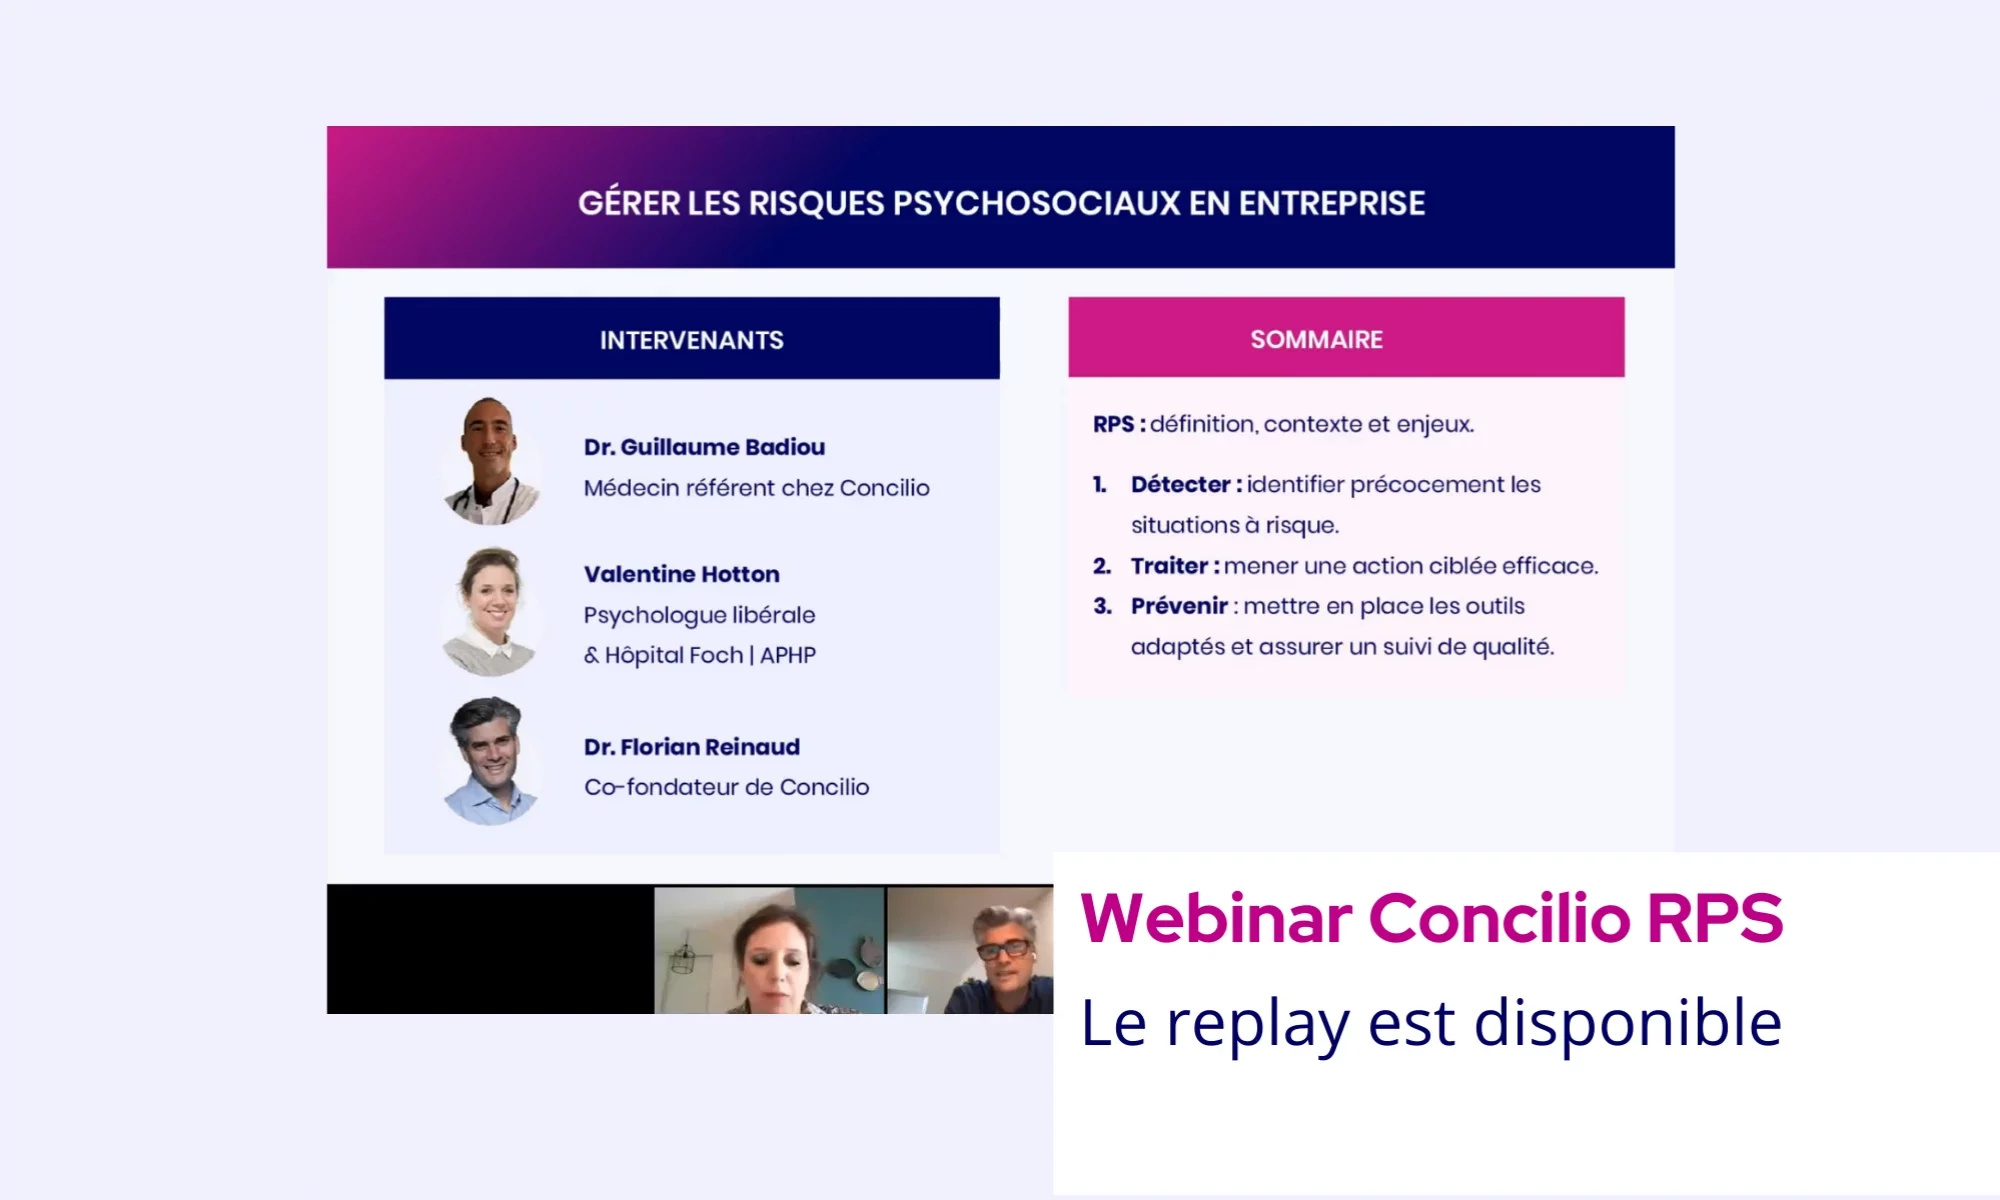 Webinar Concilio "Gérer les risques psychosociaux en entreprise" : Replay disponible